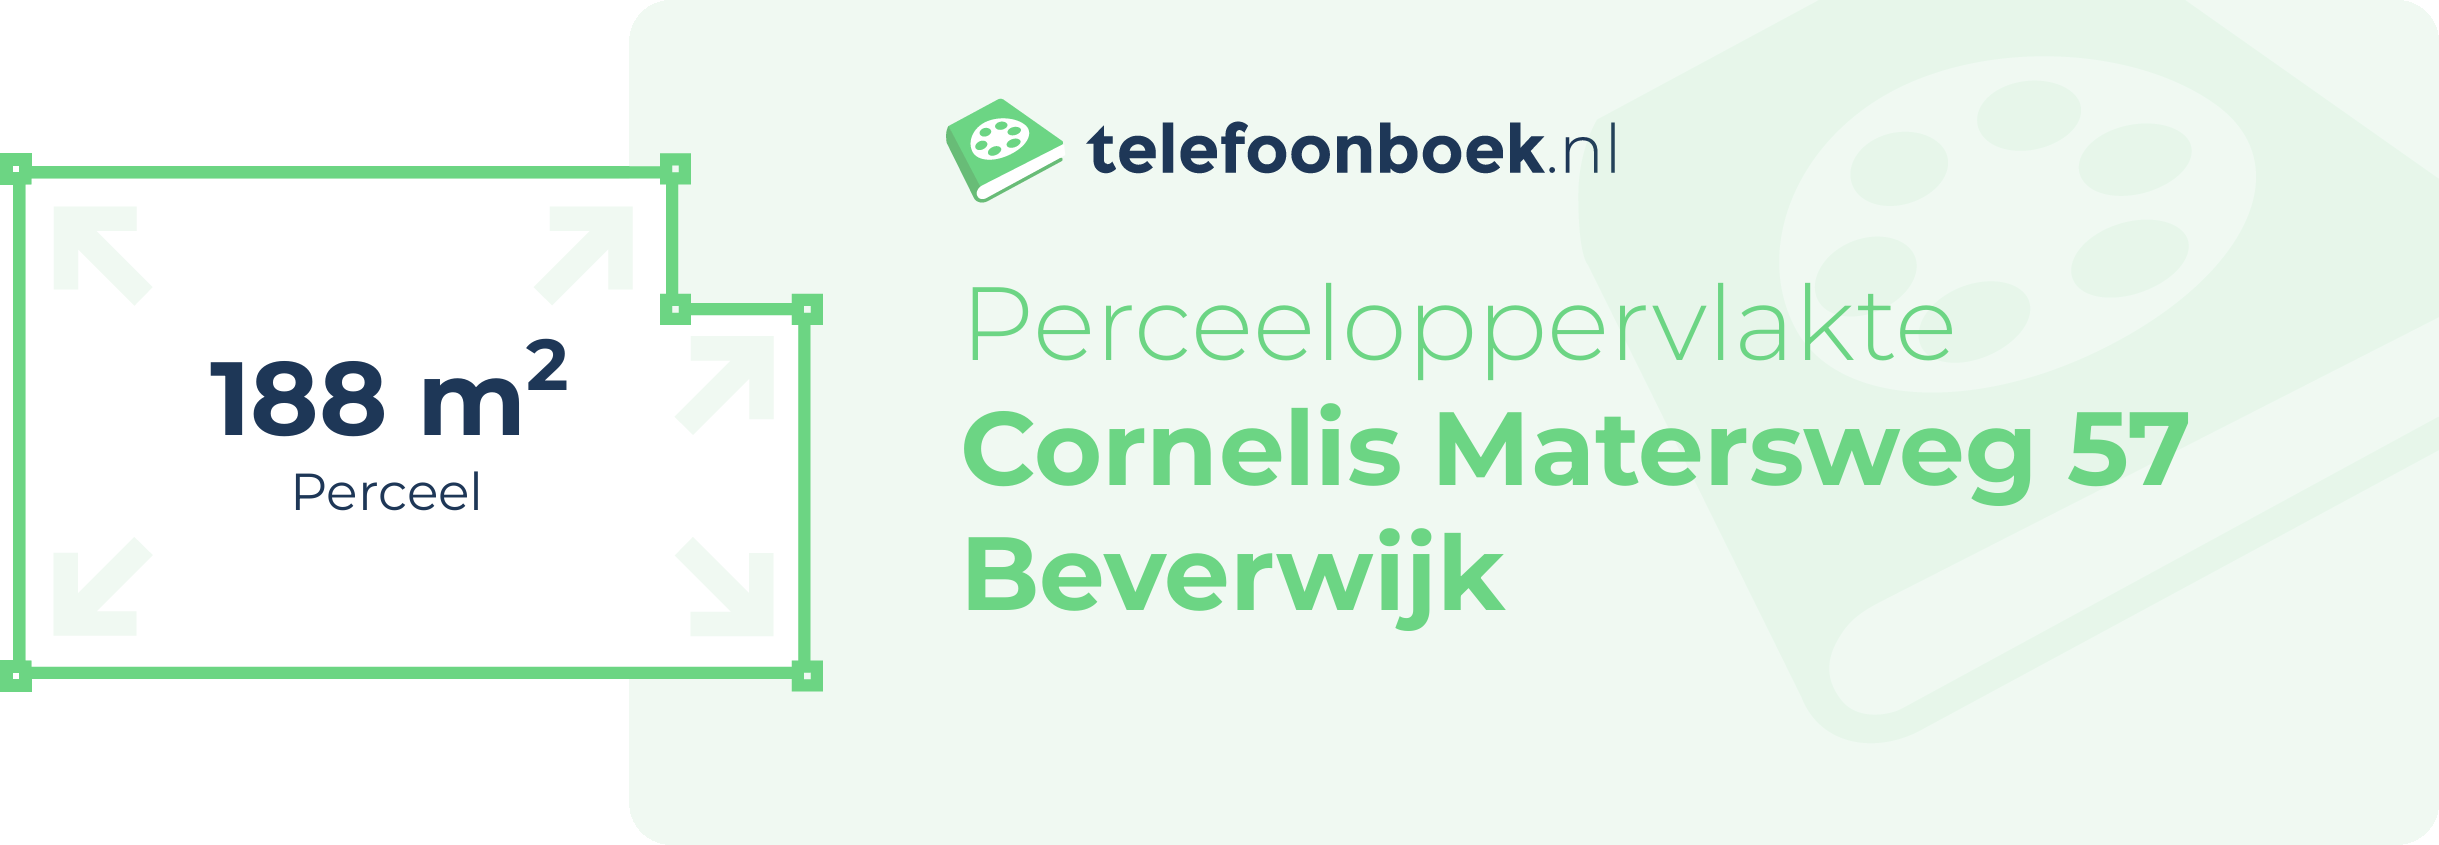 Perceeloppervlakte Cornelis Matersweg 57 Beverwijk